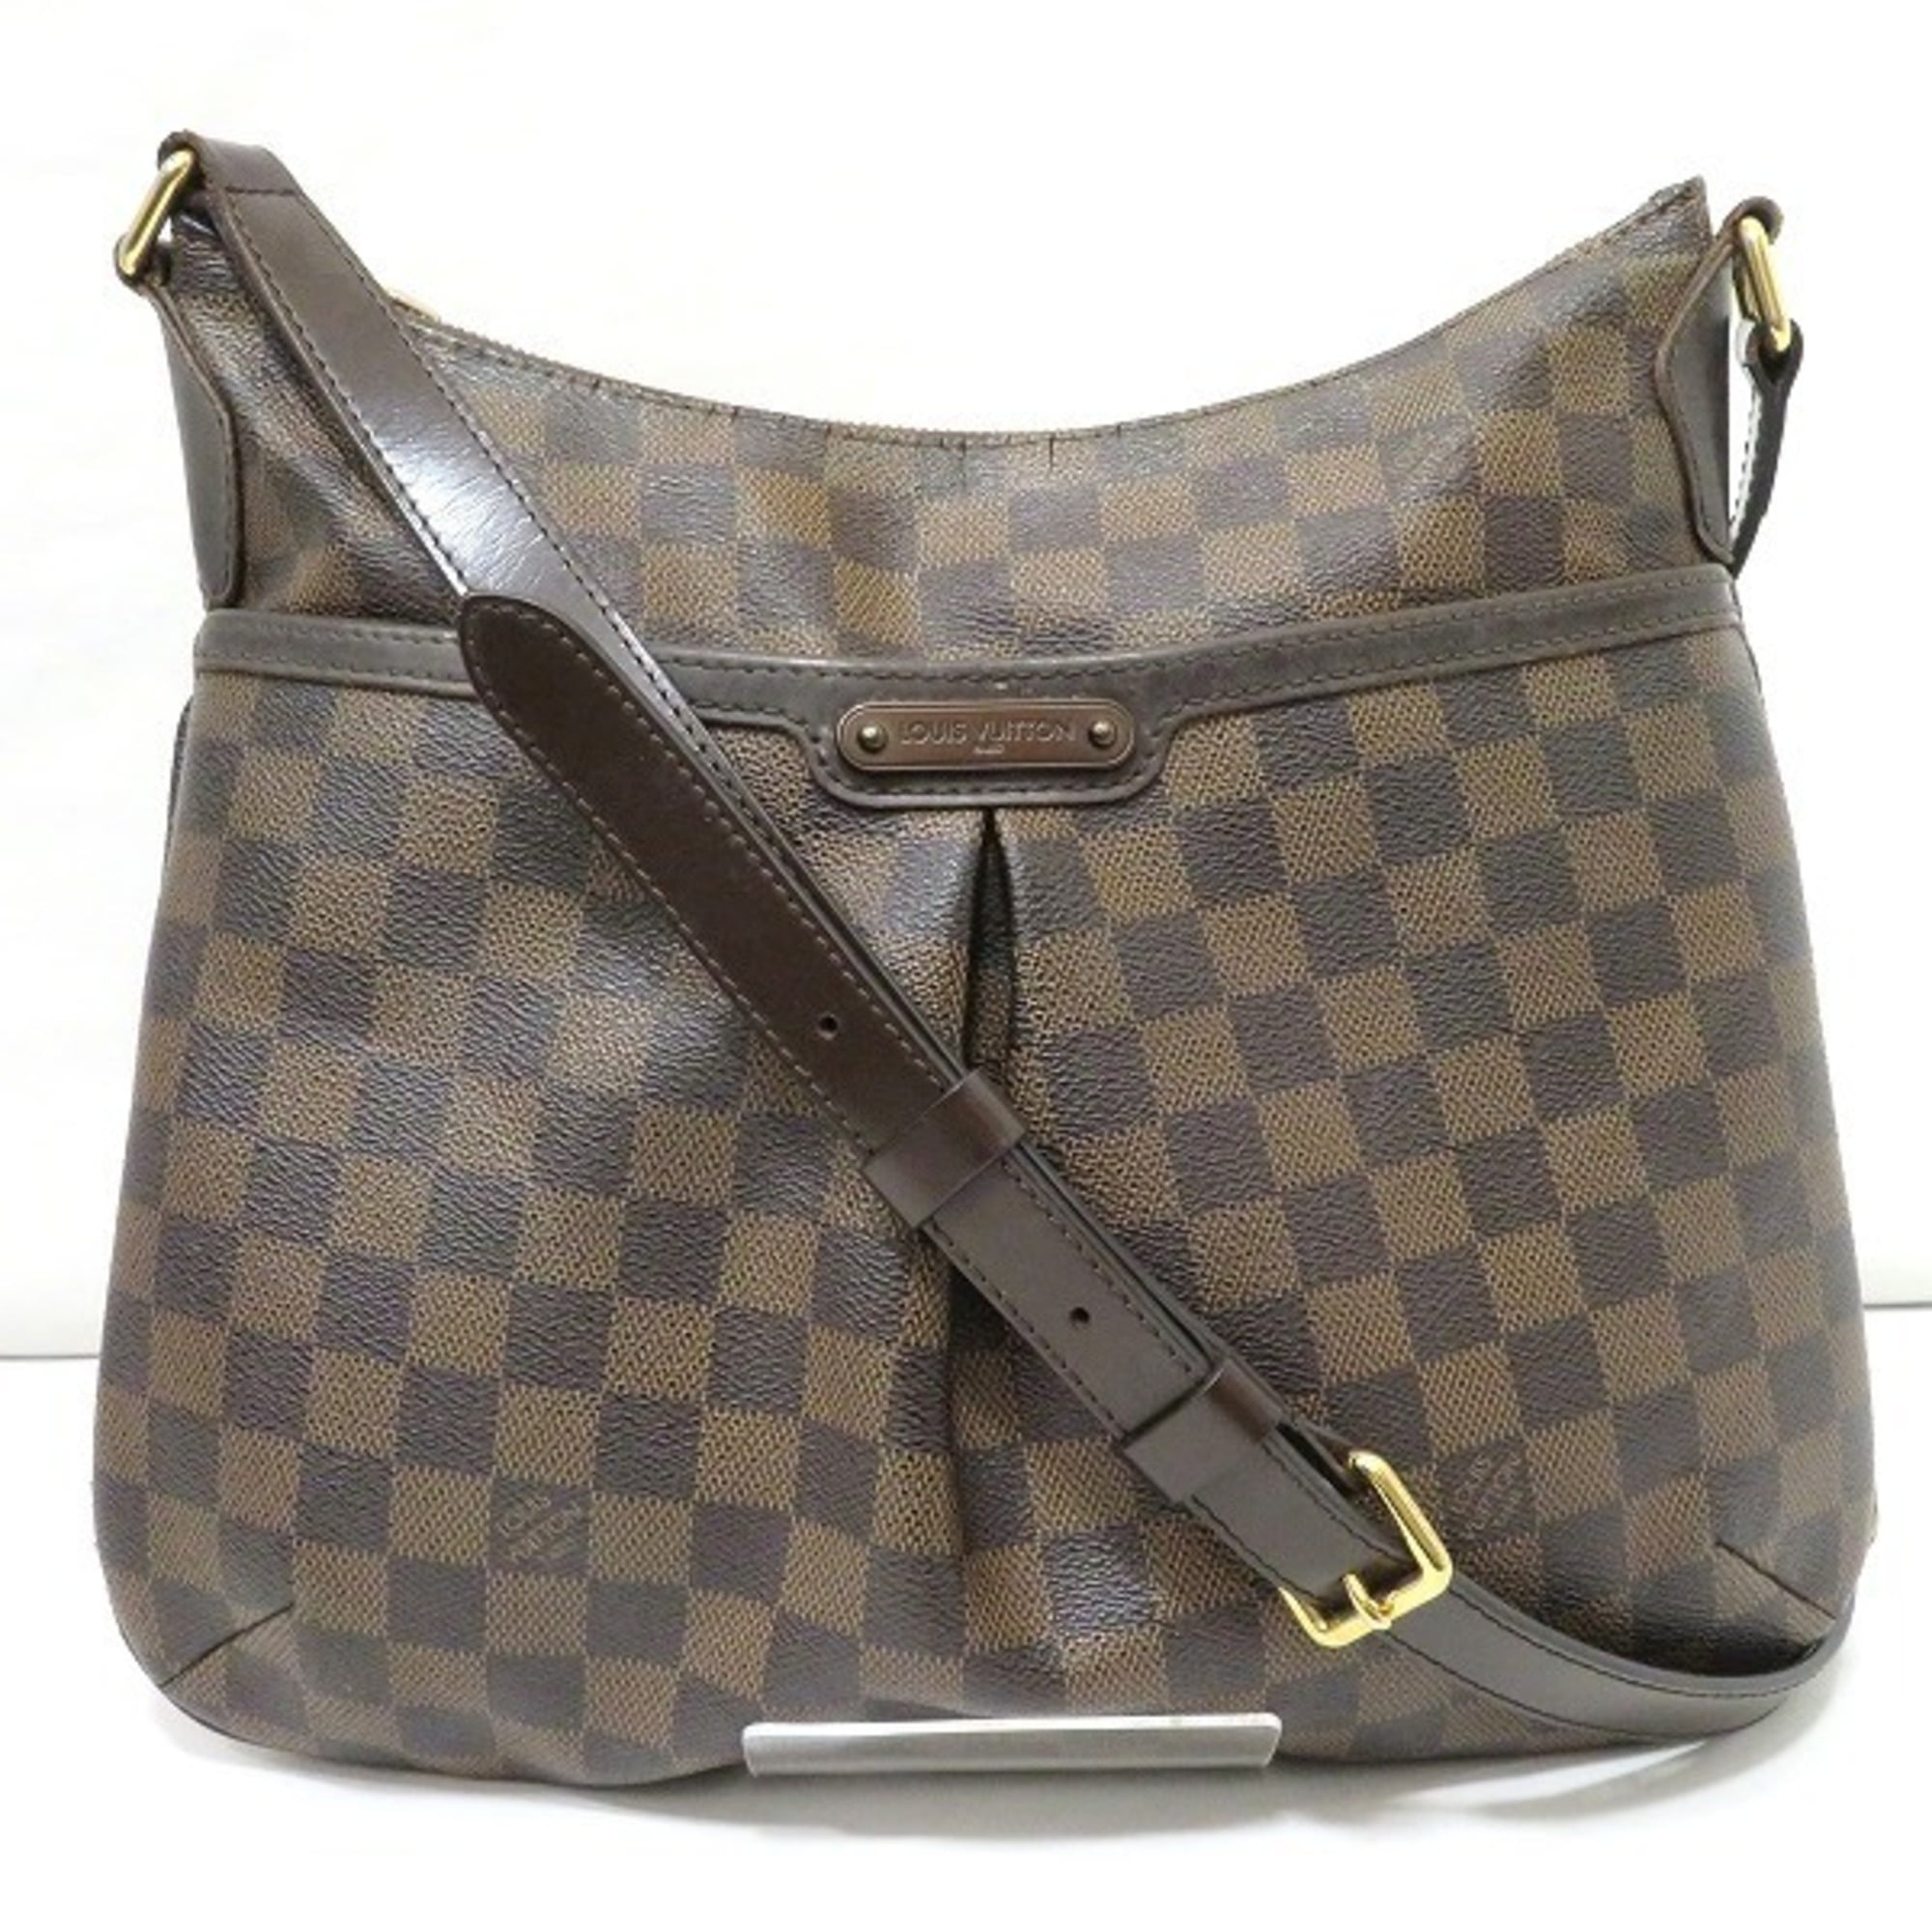 Louis Vuitton, Bags, Louis Vuitton Bloomsbury Pm Size